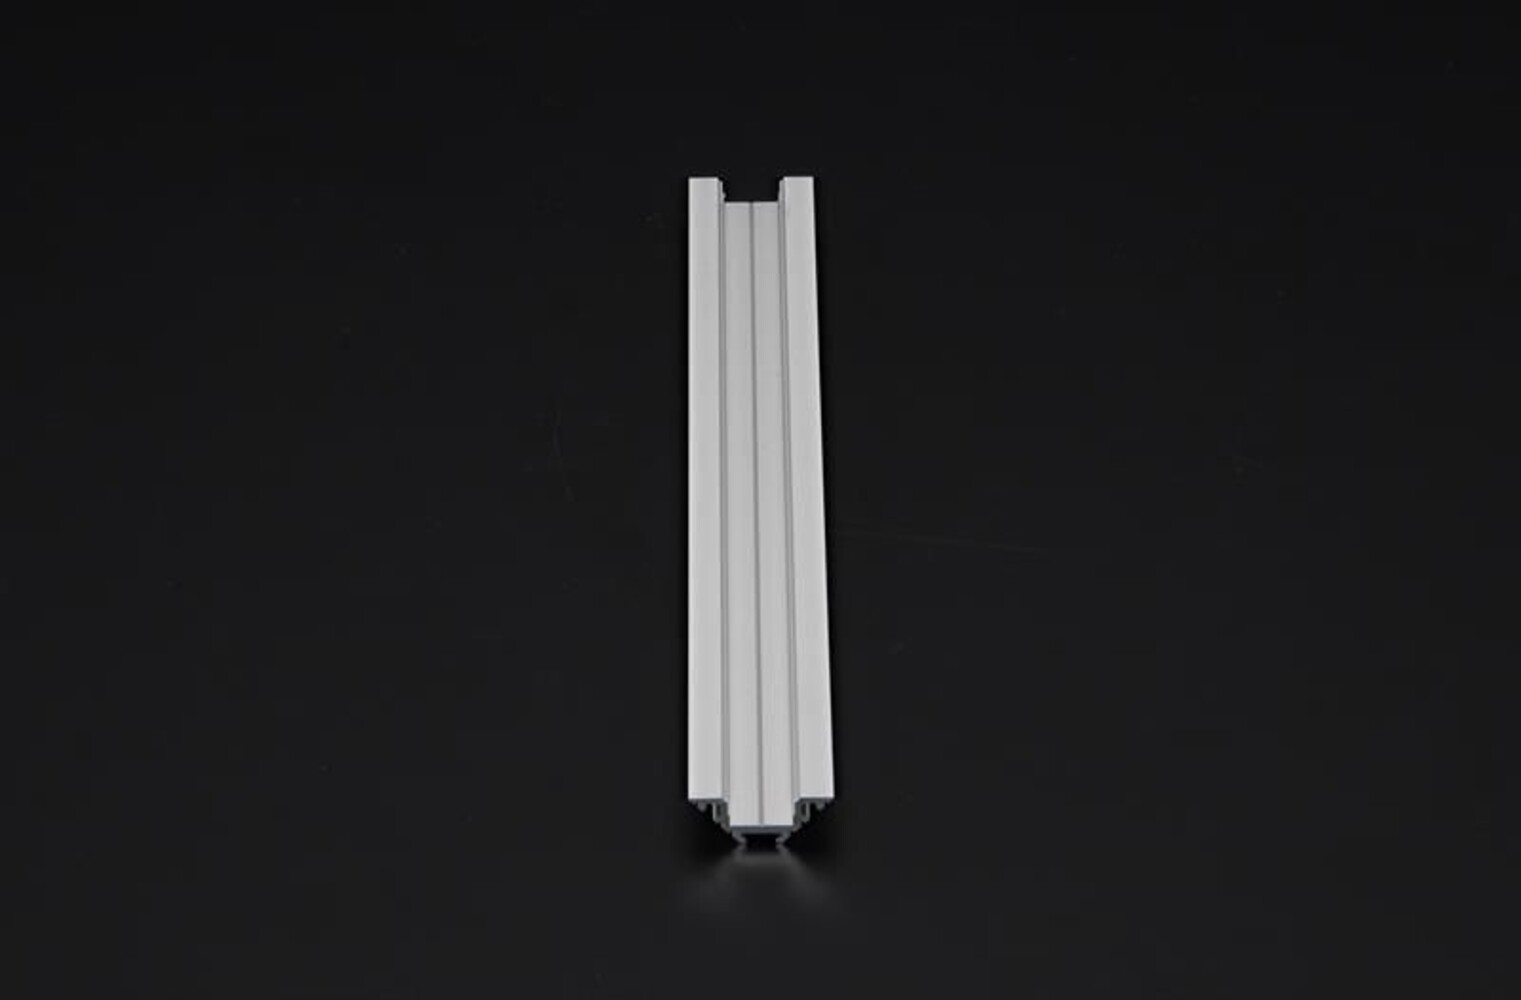 Hochwertiges LED Profil von der Marke Deko-Light, in Silber matt und eloxiert, perfekt für 12-13.3 mm LED Stripes